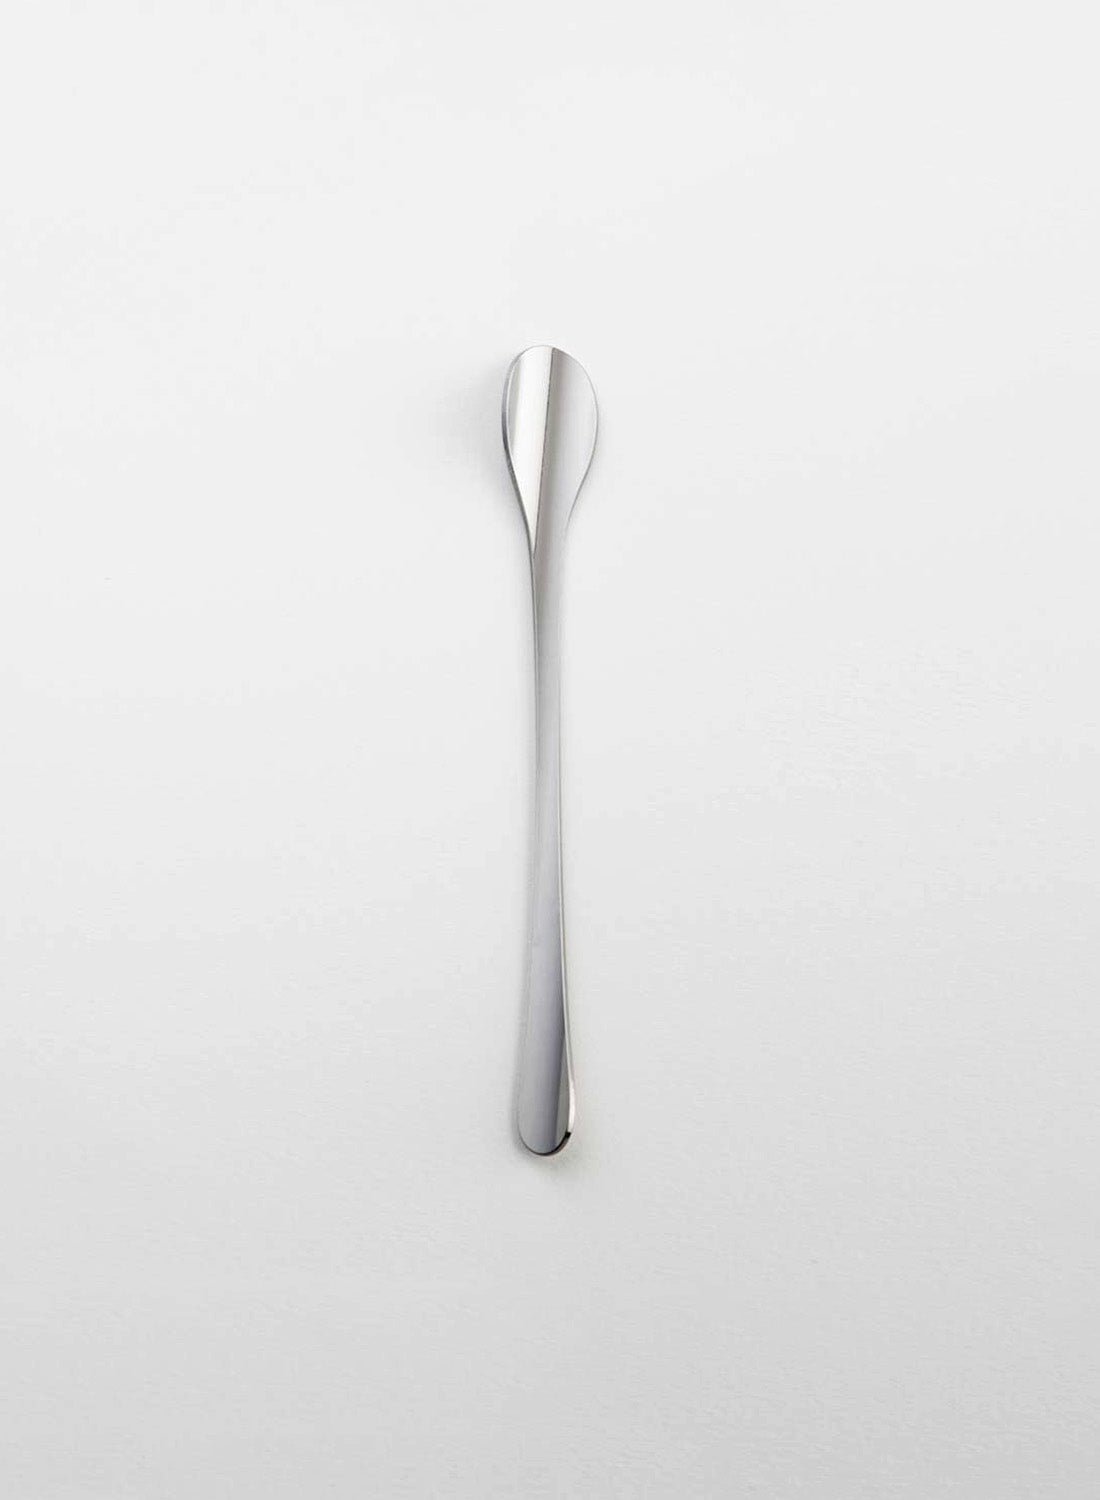 Maarten Baptist Tube Cutlery Coffee Latte spoon